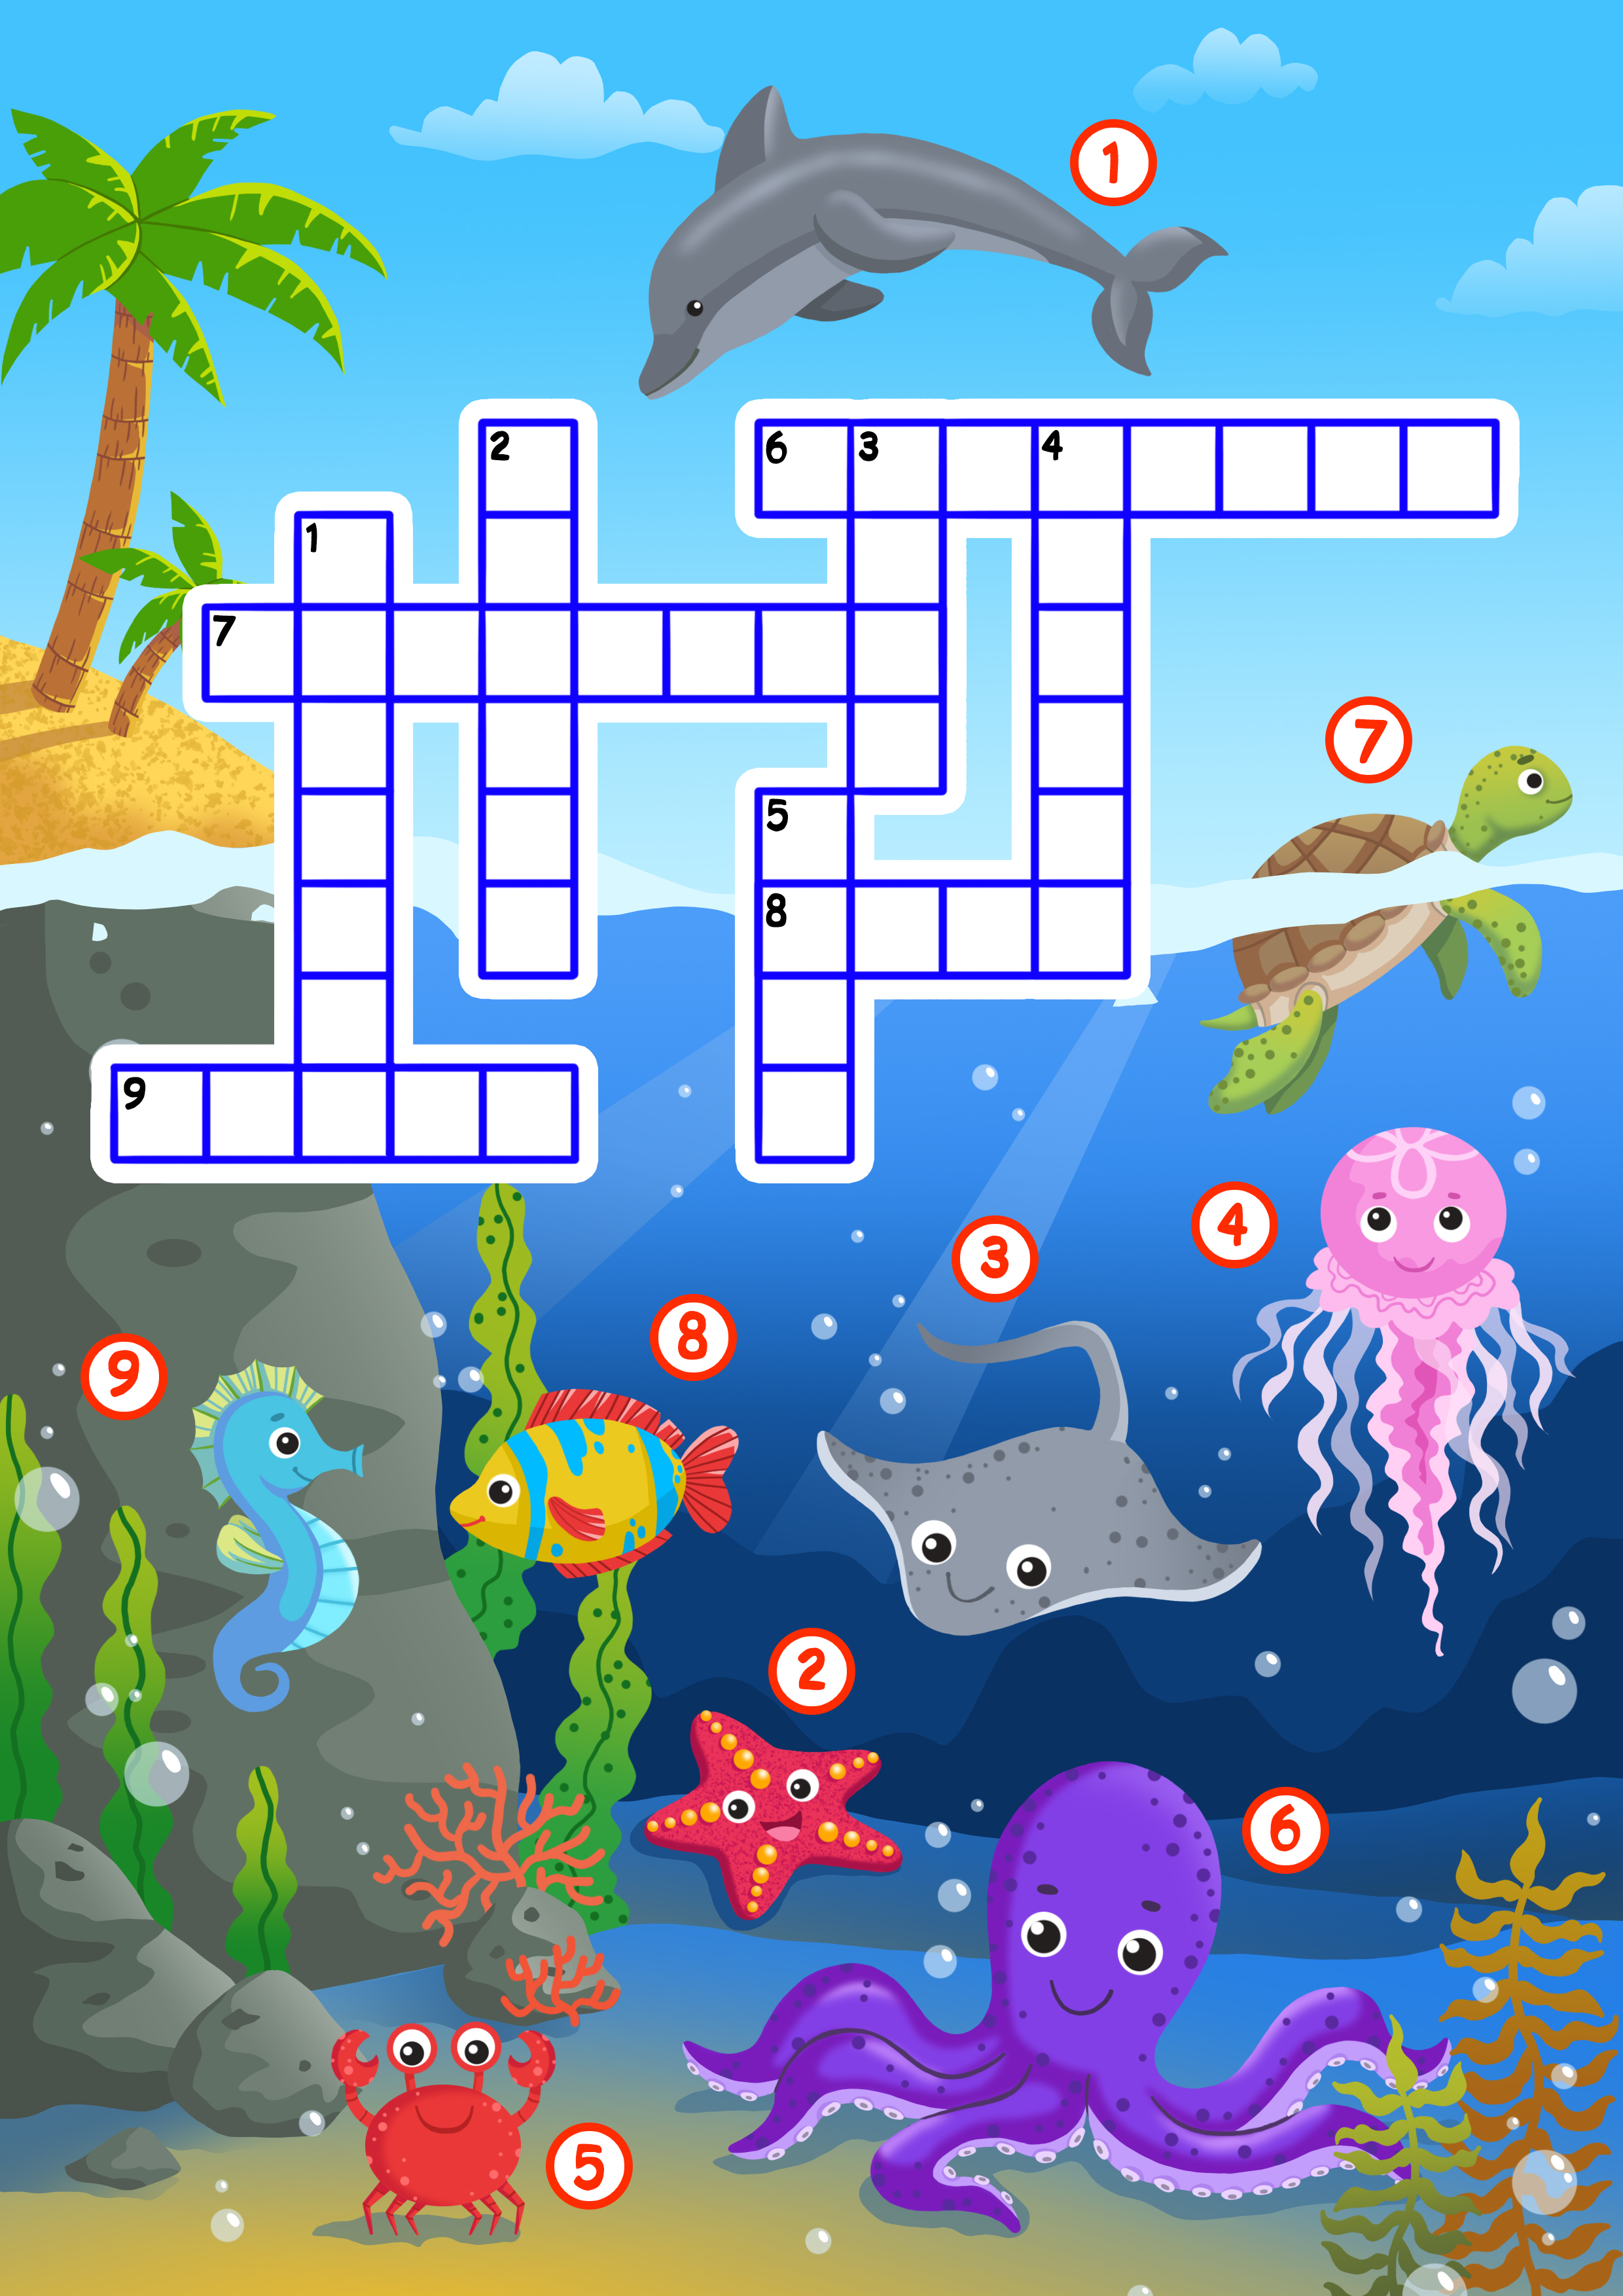 Crossword more. Кроссворд морские обитатели для детей. Кроссворд для детей морские животные. Кроссворды про морских животных для детей. Кроссворд на морскую тему для детей.